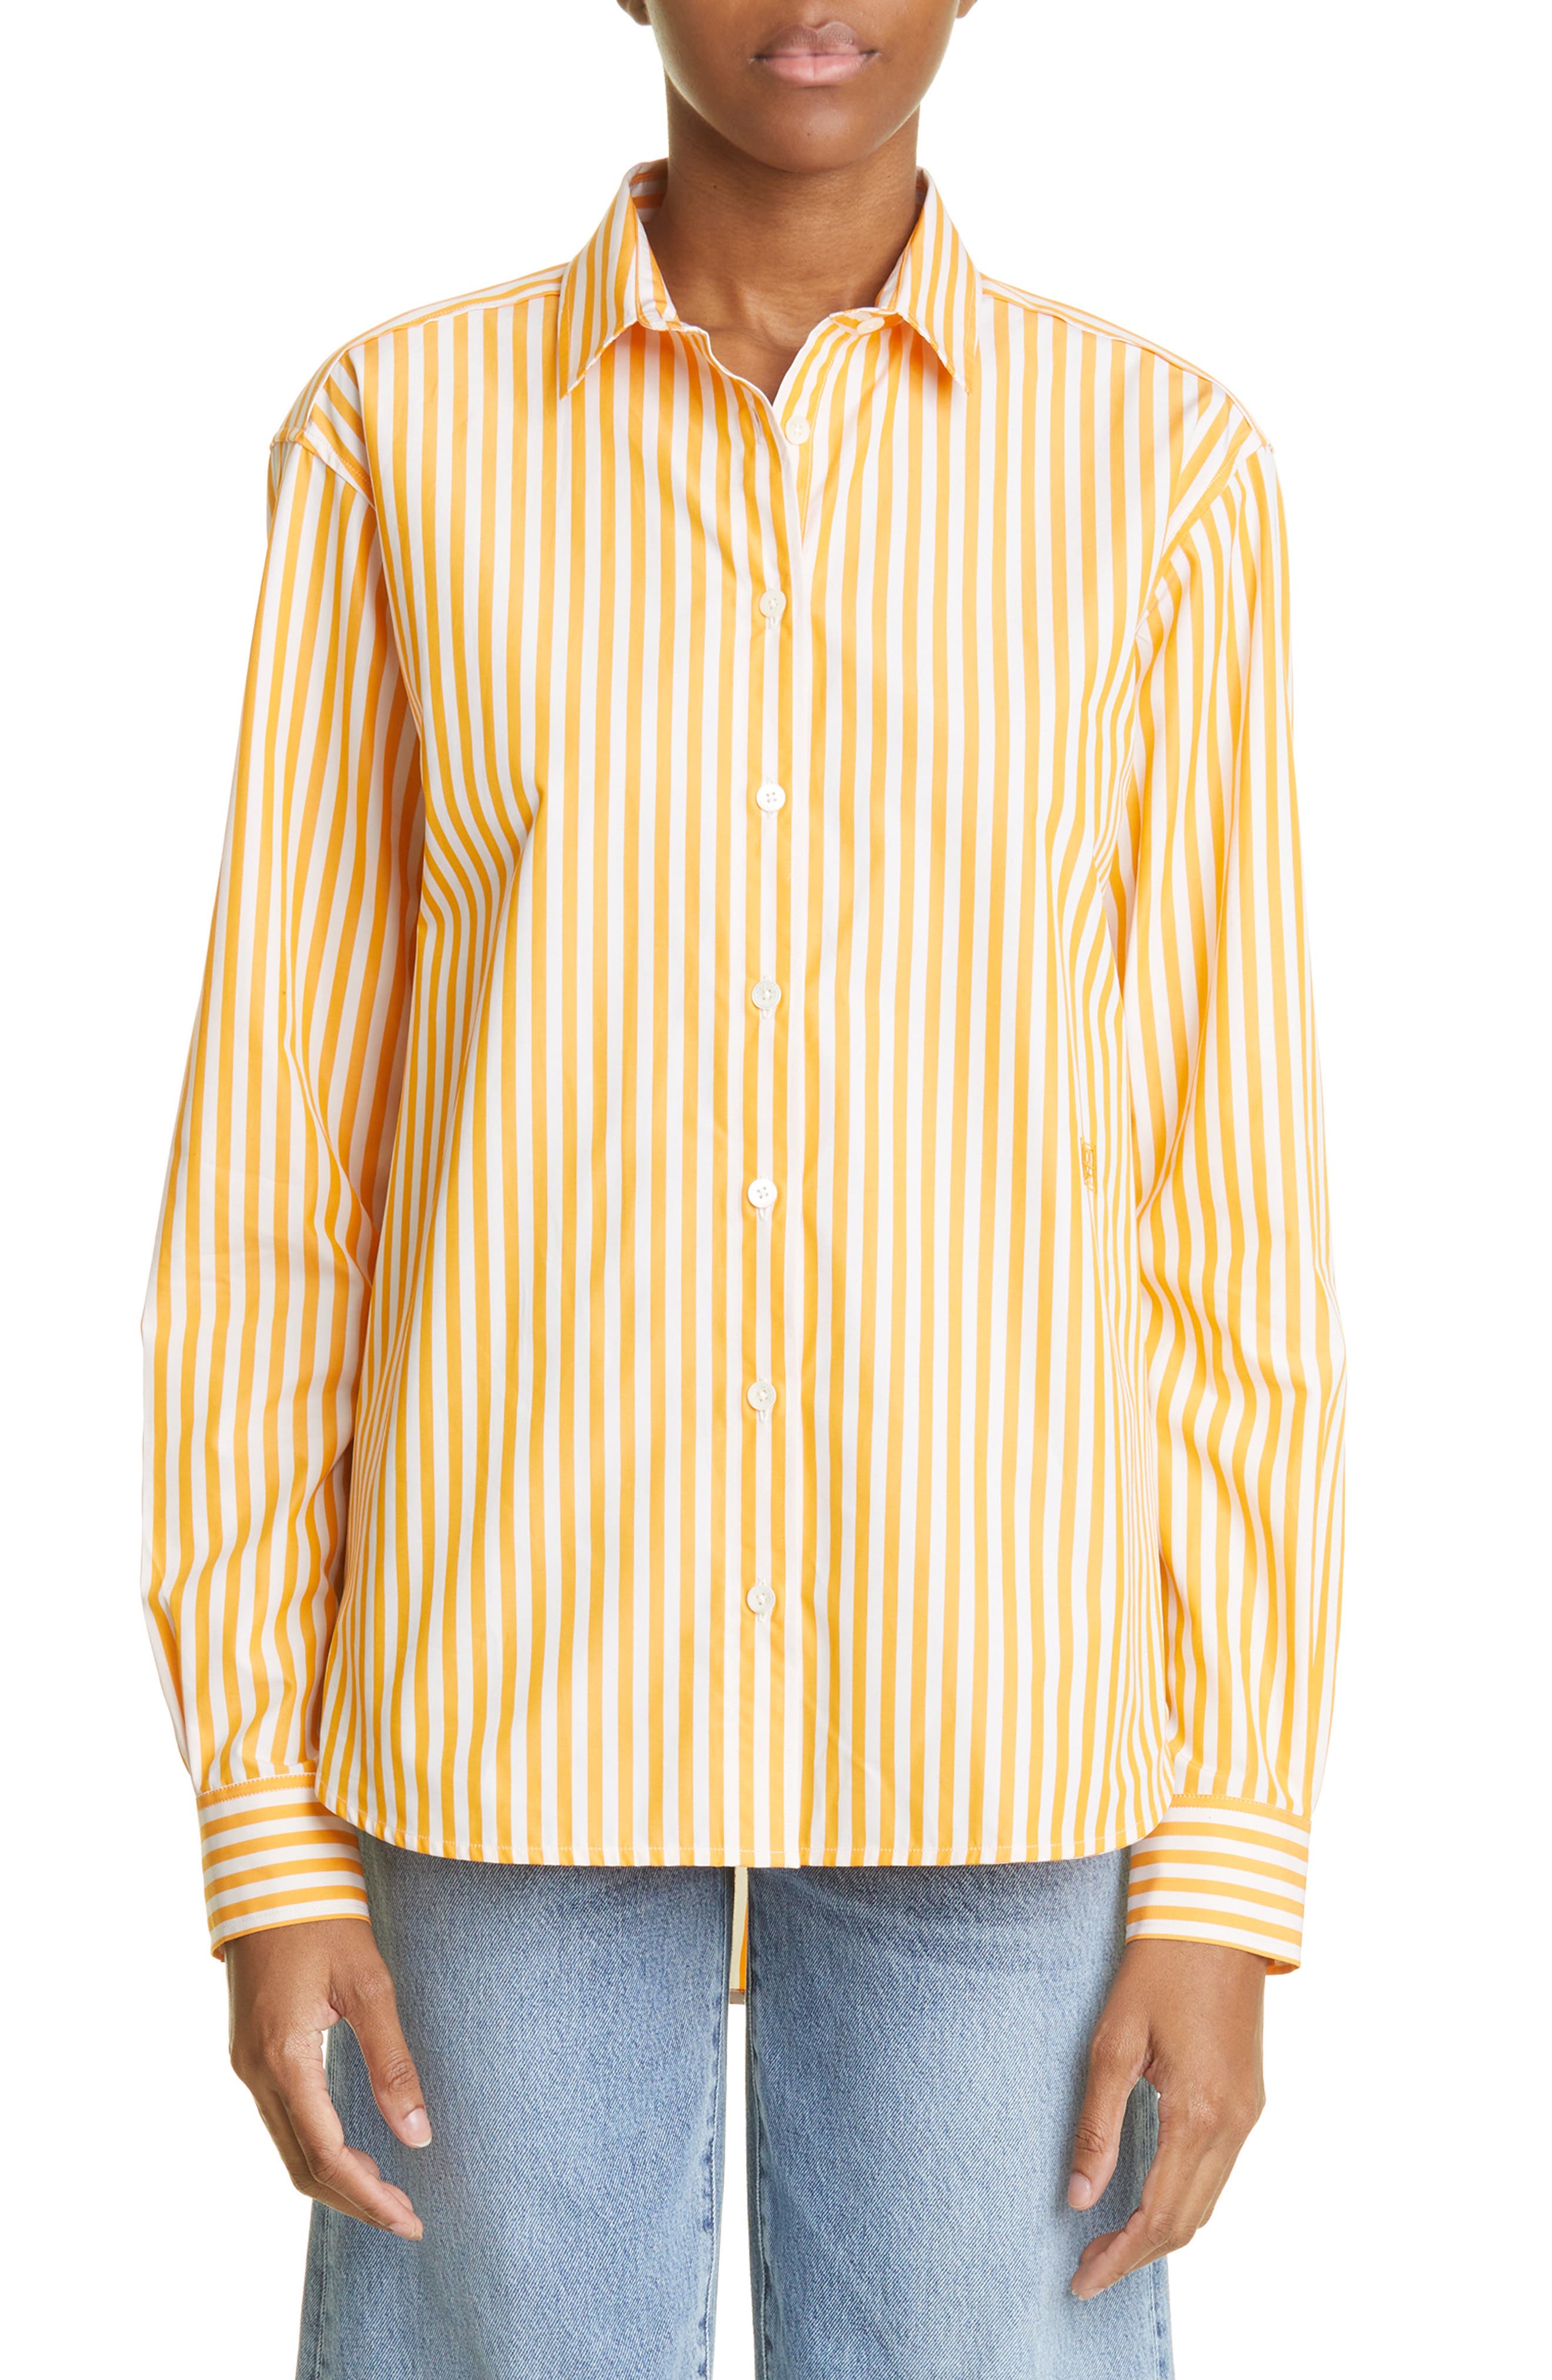 Toteme Signature Stripe Cotton Button-Up Shirt in Orange Stripe